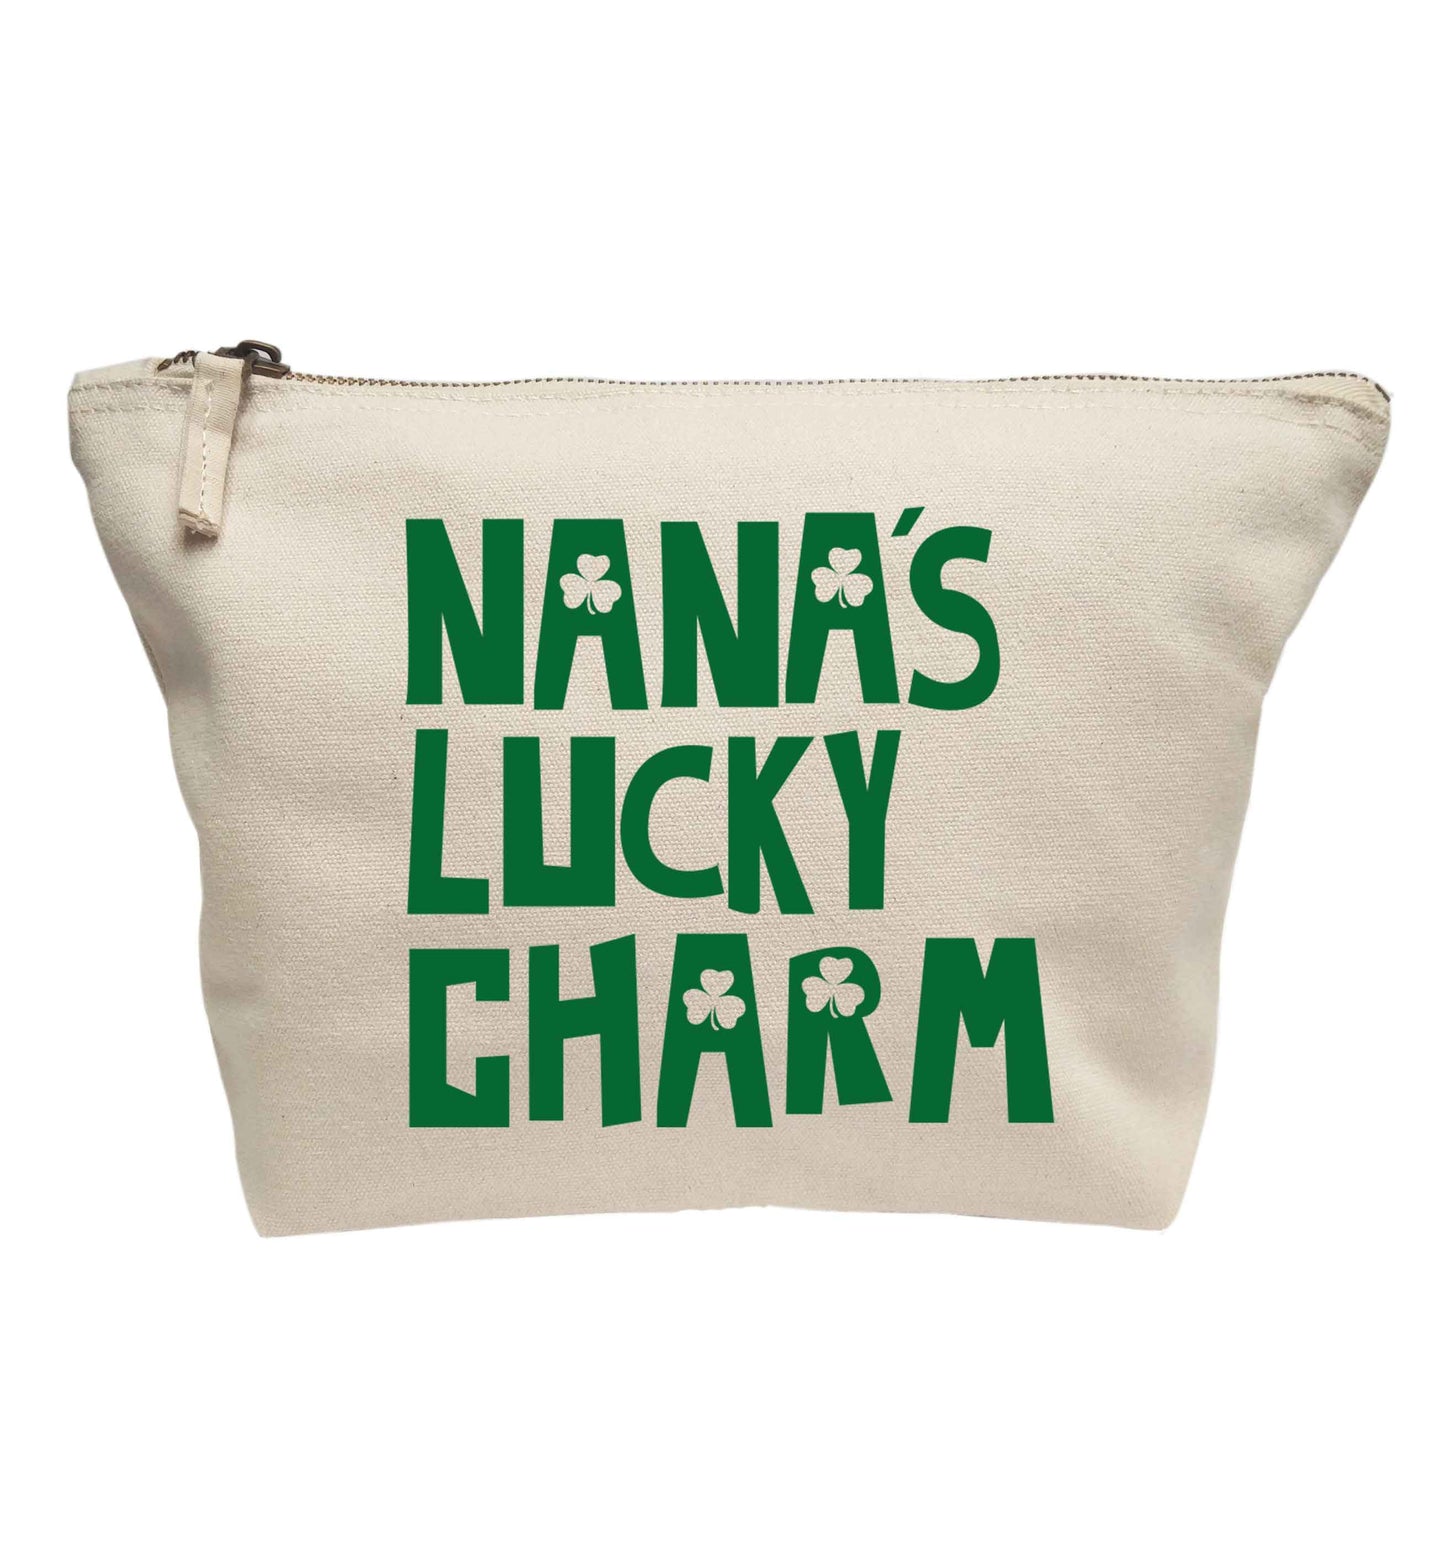 Nana's lucky charm | Makeup / wash bag